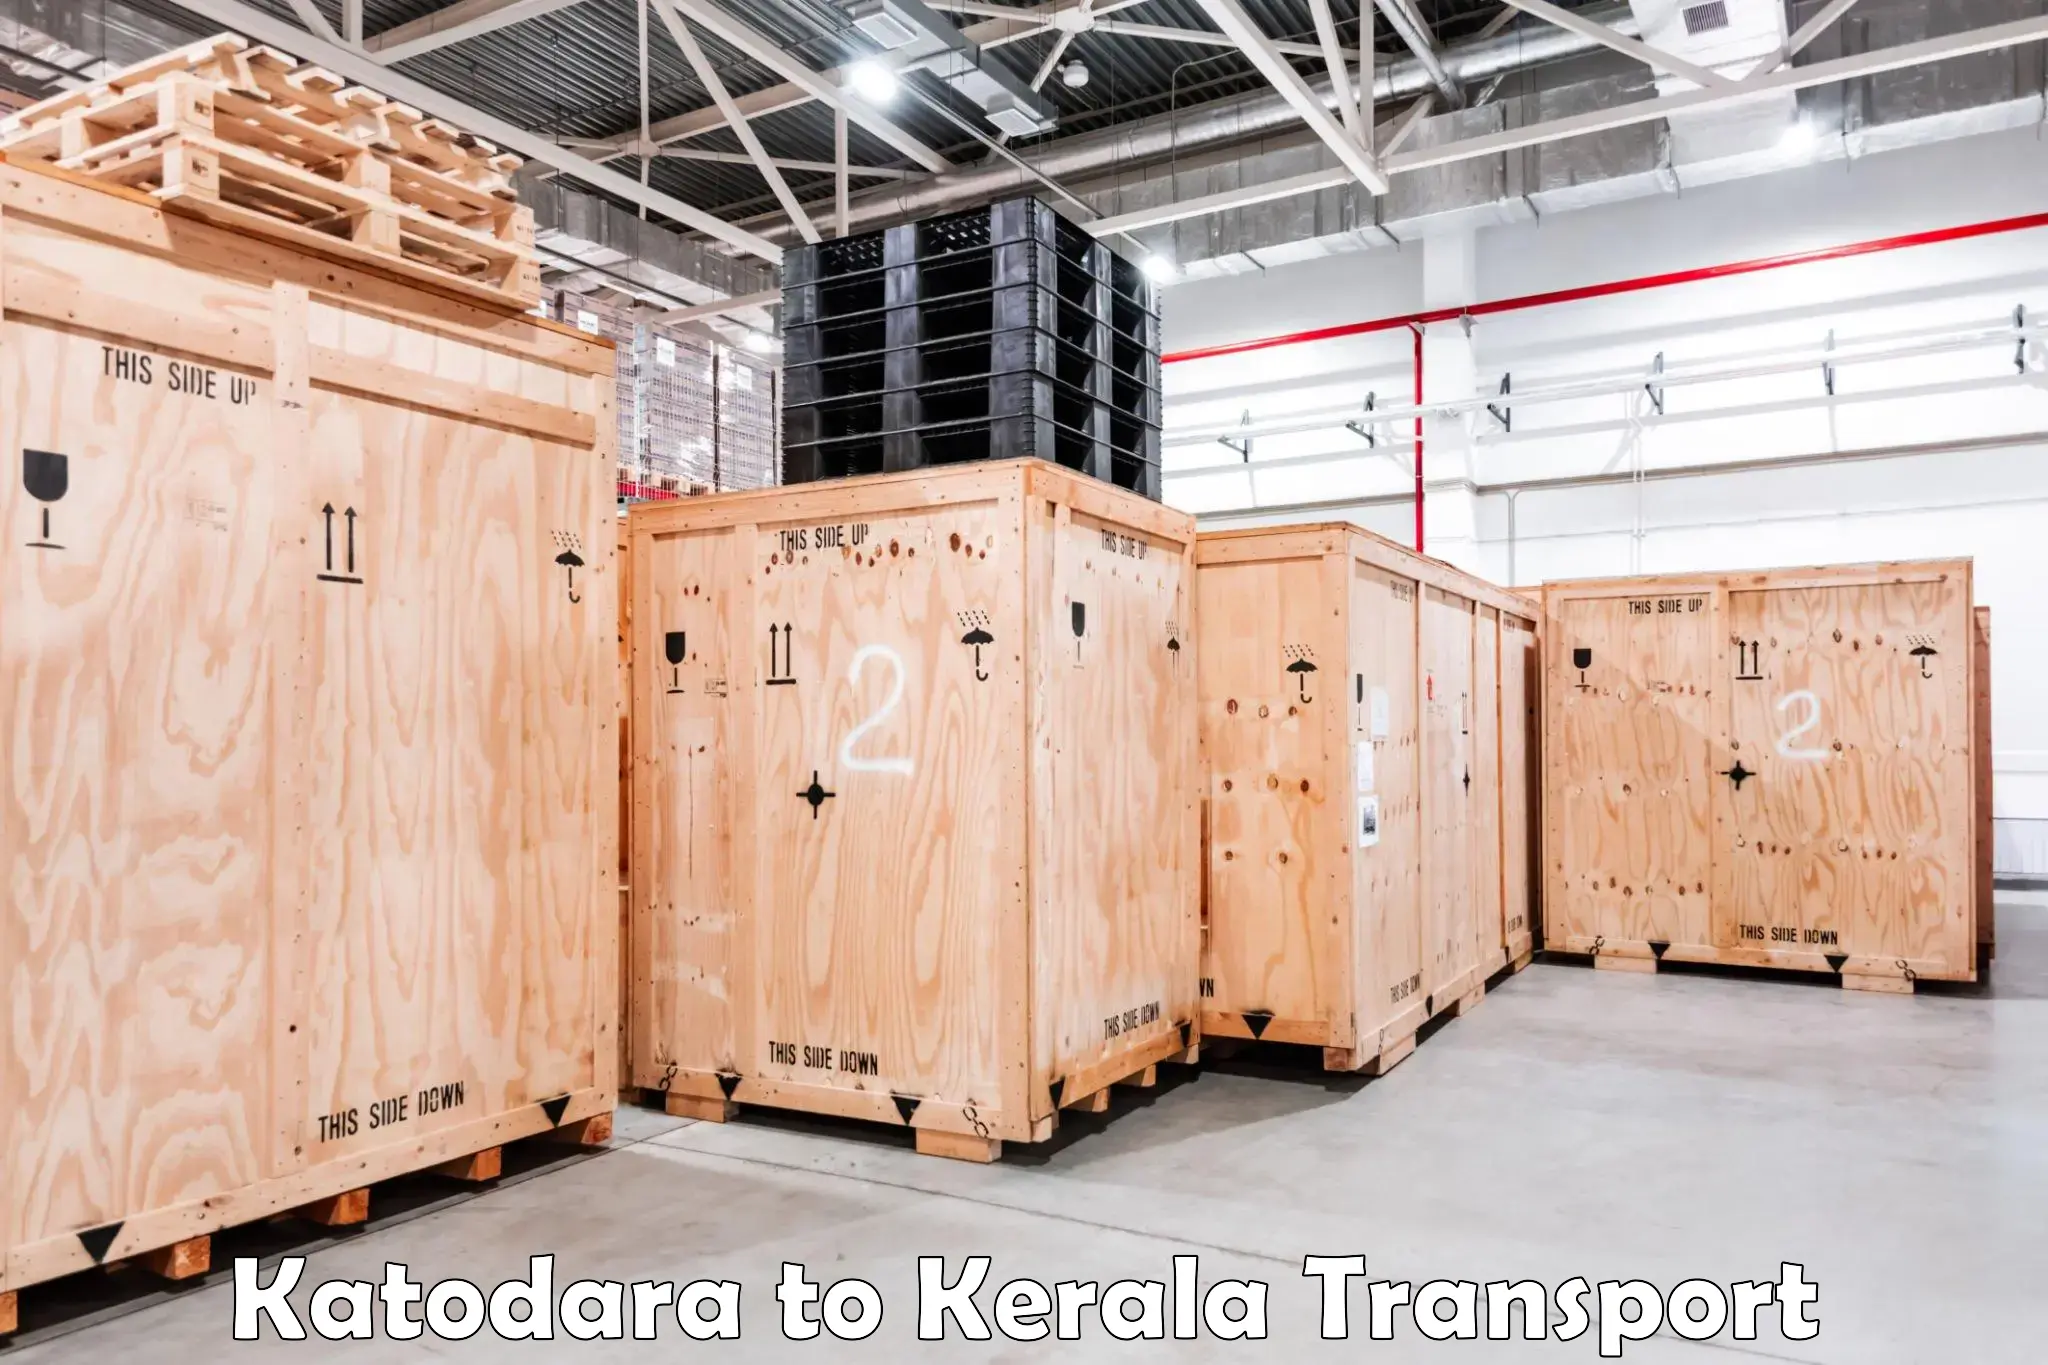 Transport services in Katodara to Neyyattinkara